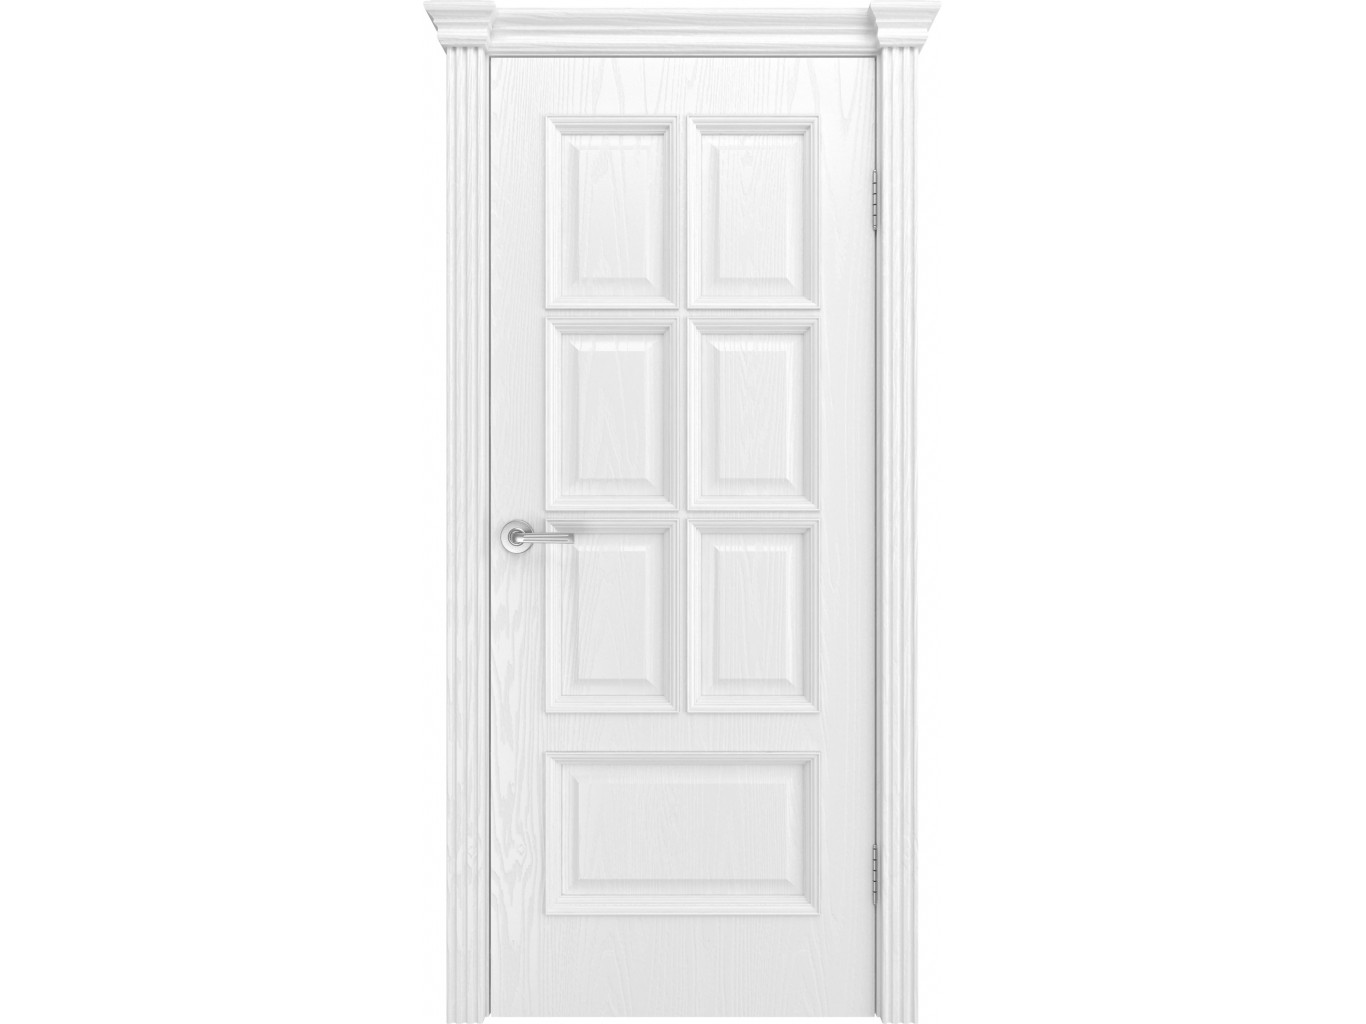 Двери межкомнатные белые эмаль купить. Трио (эмаль, белый, глухое) 60*200. Квадро-2 дверь эмаль белая. Итальянская дверь Fortis белая эмаль. Двери Верда эмаль.